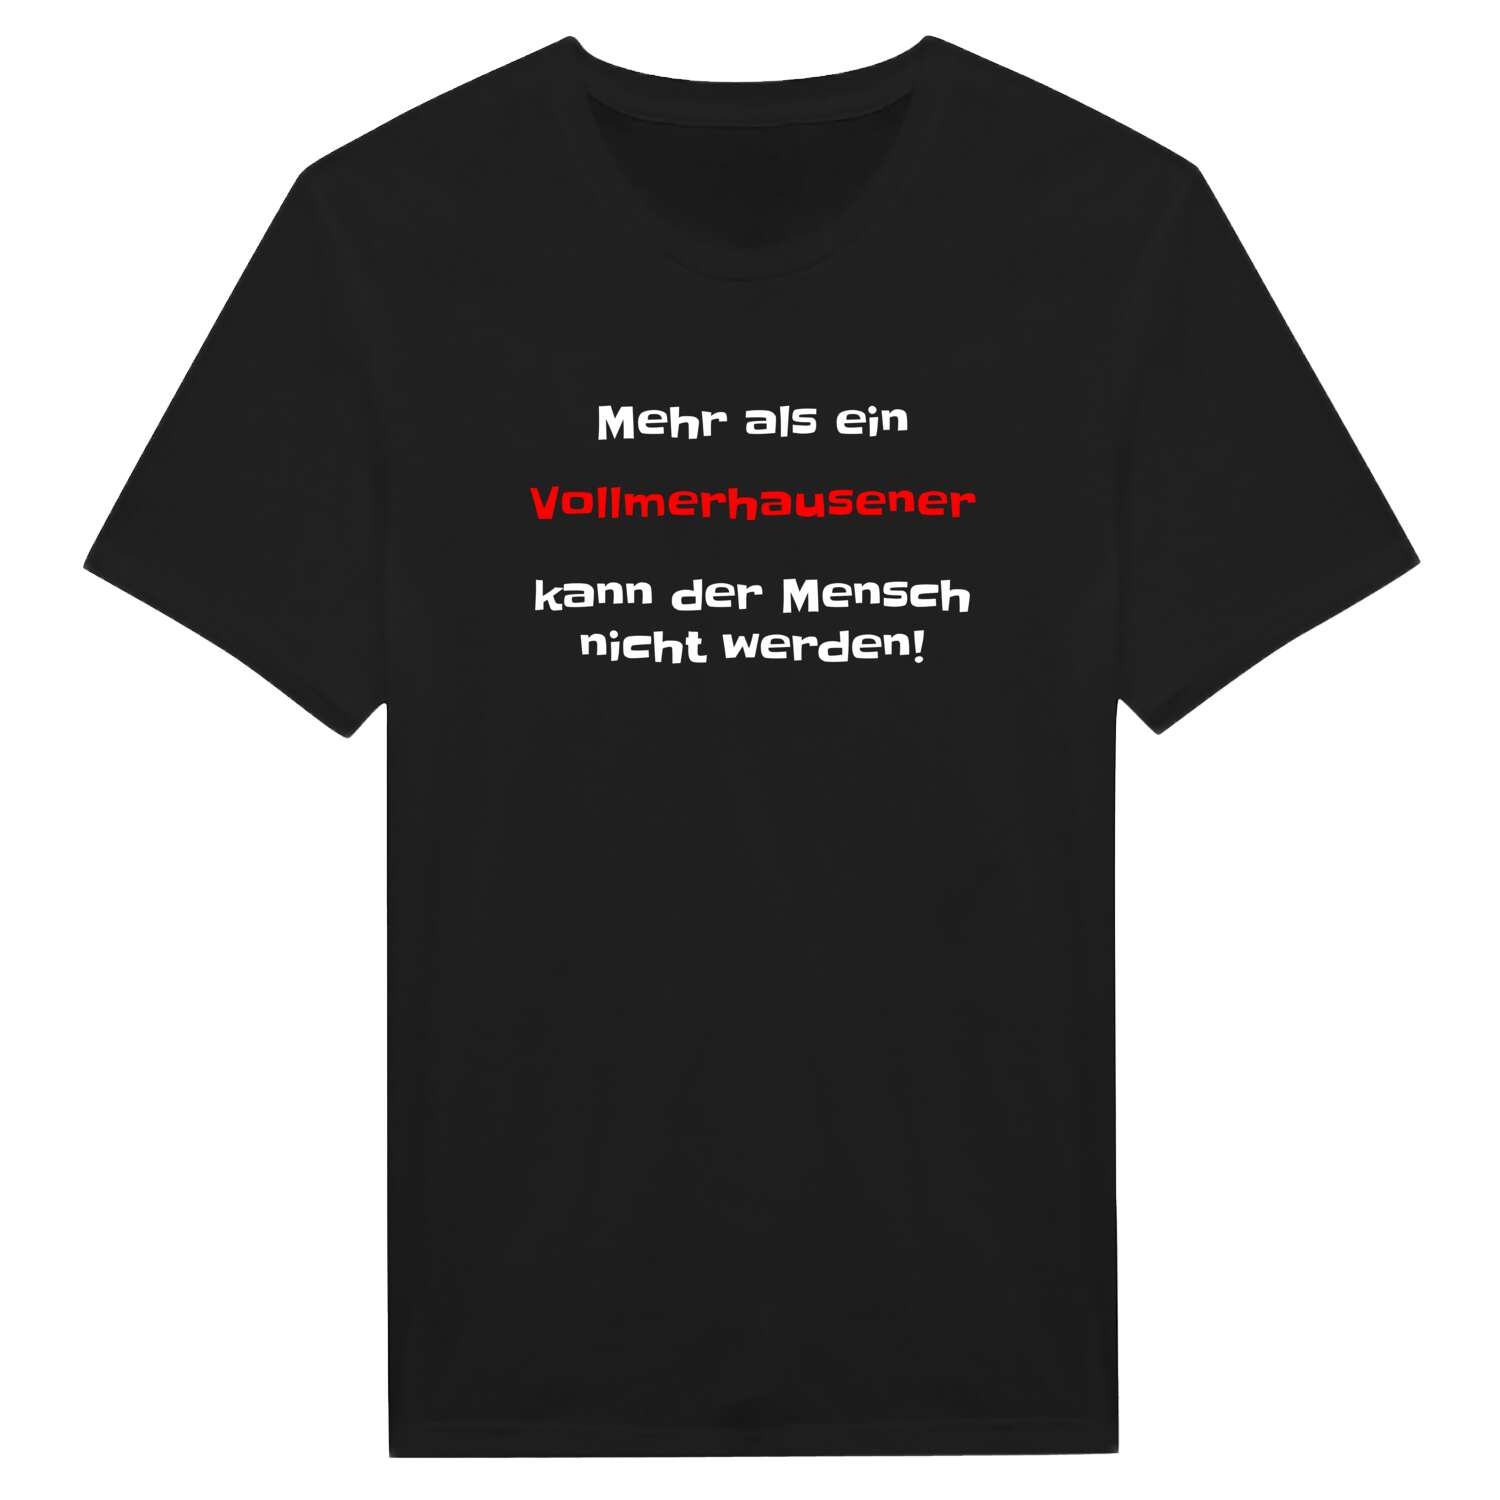 Vollmerhausen T-Shirt »Mehr als ein«